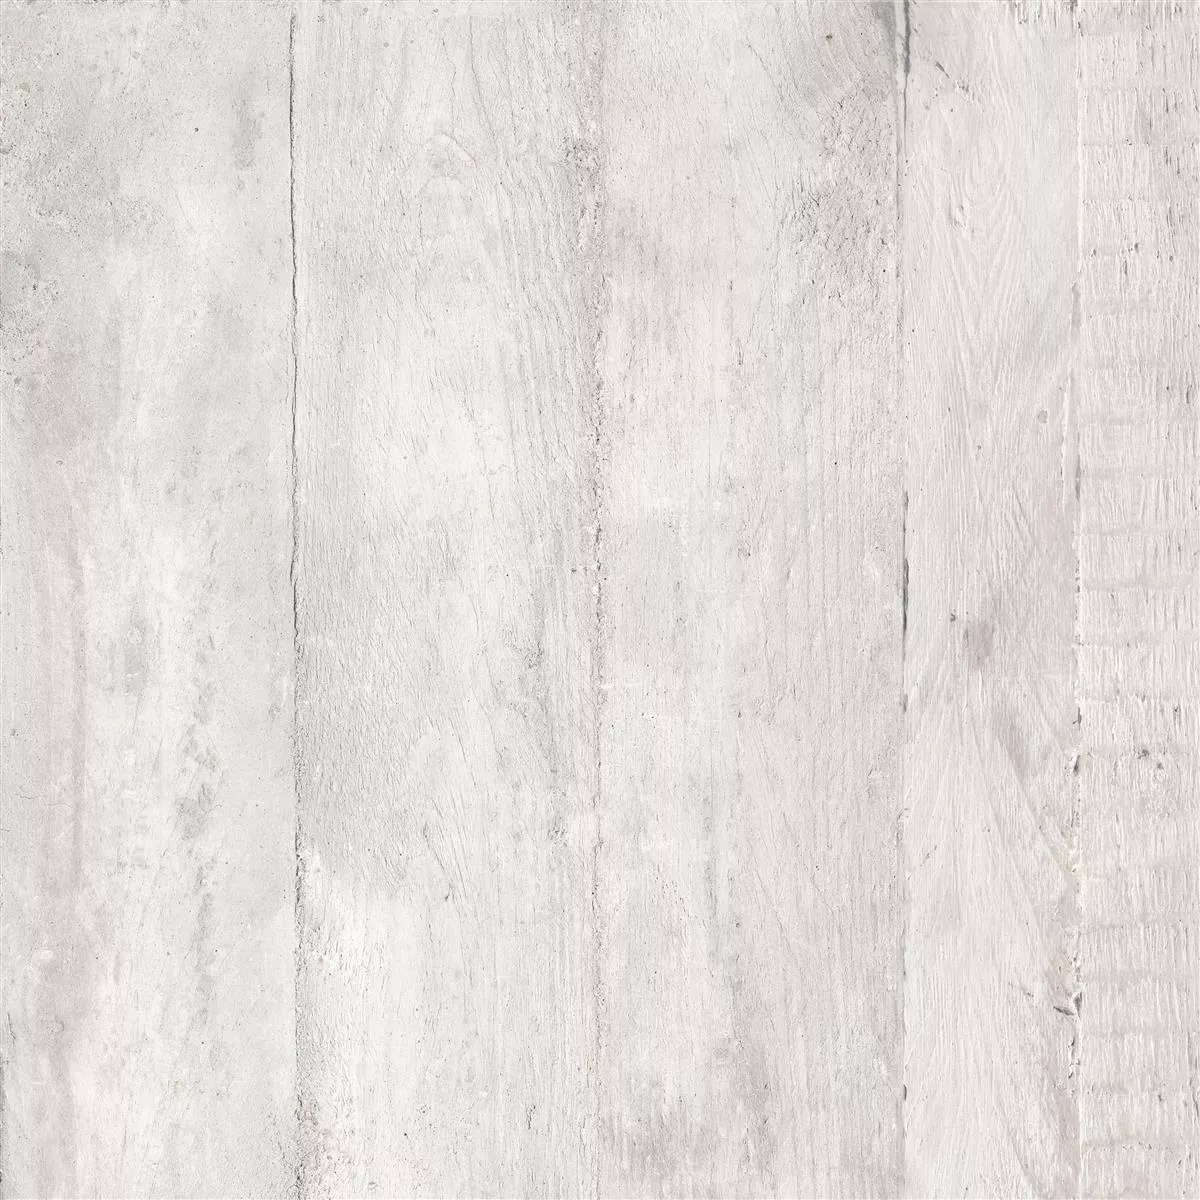 Πρότυπο Πλακάκια Δαπέδου Gorki Όψη Ξύλου 60x60cm Γυαλισμένο Ασπρο